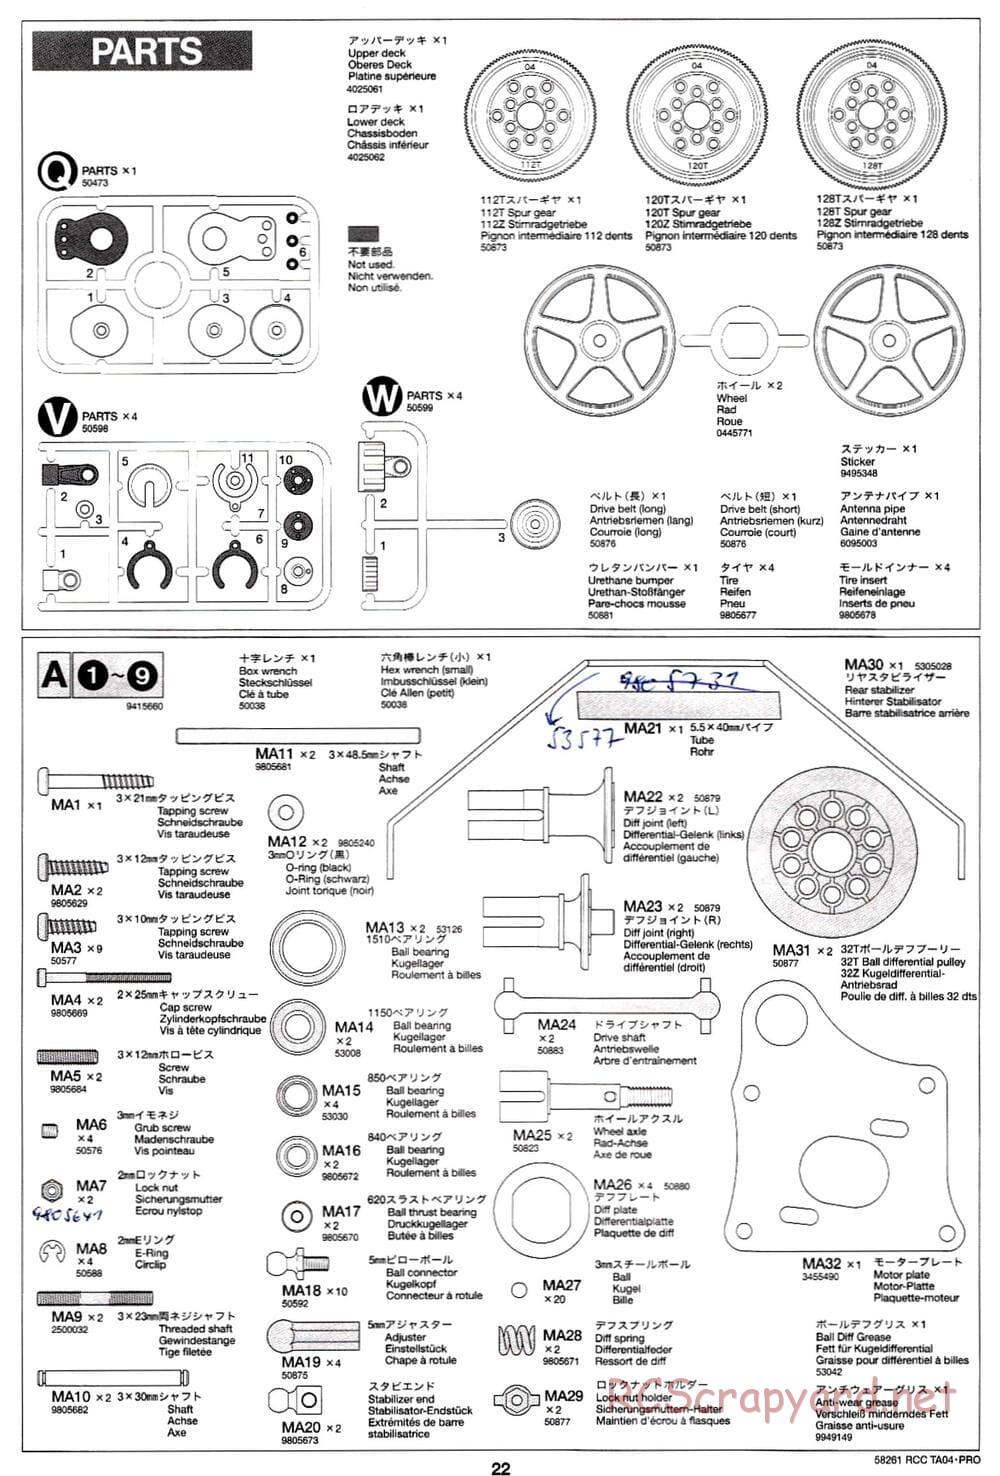 Tamiya - TA-04 Pro Chassis - Manual - Page 22